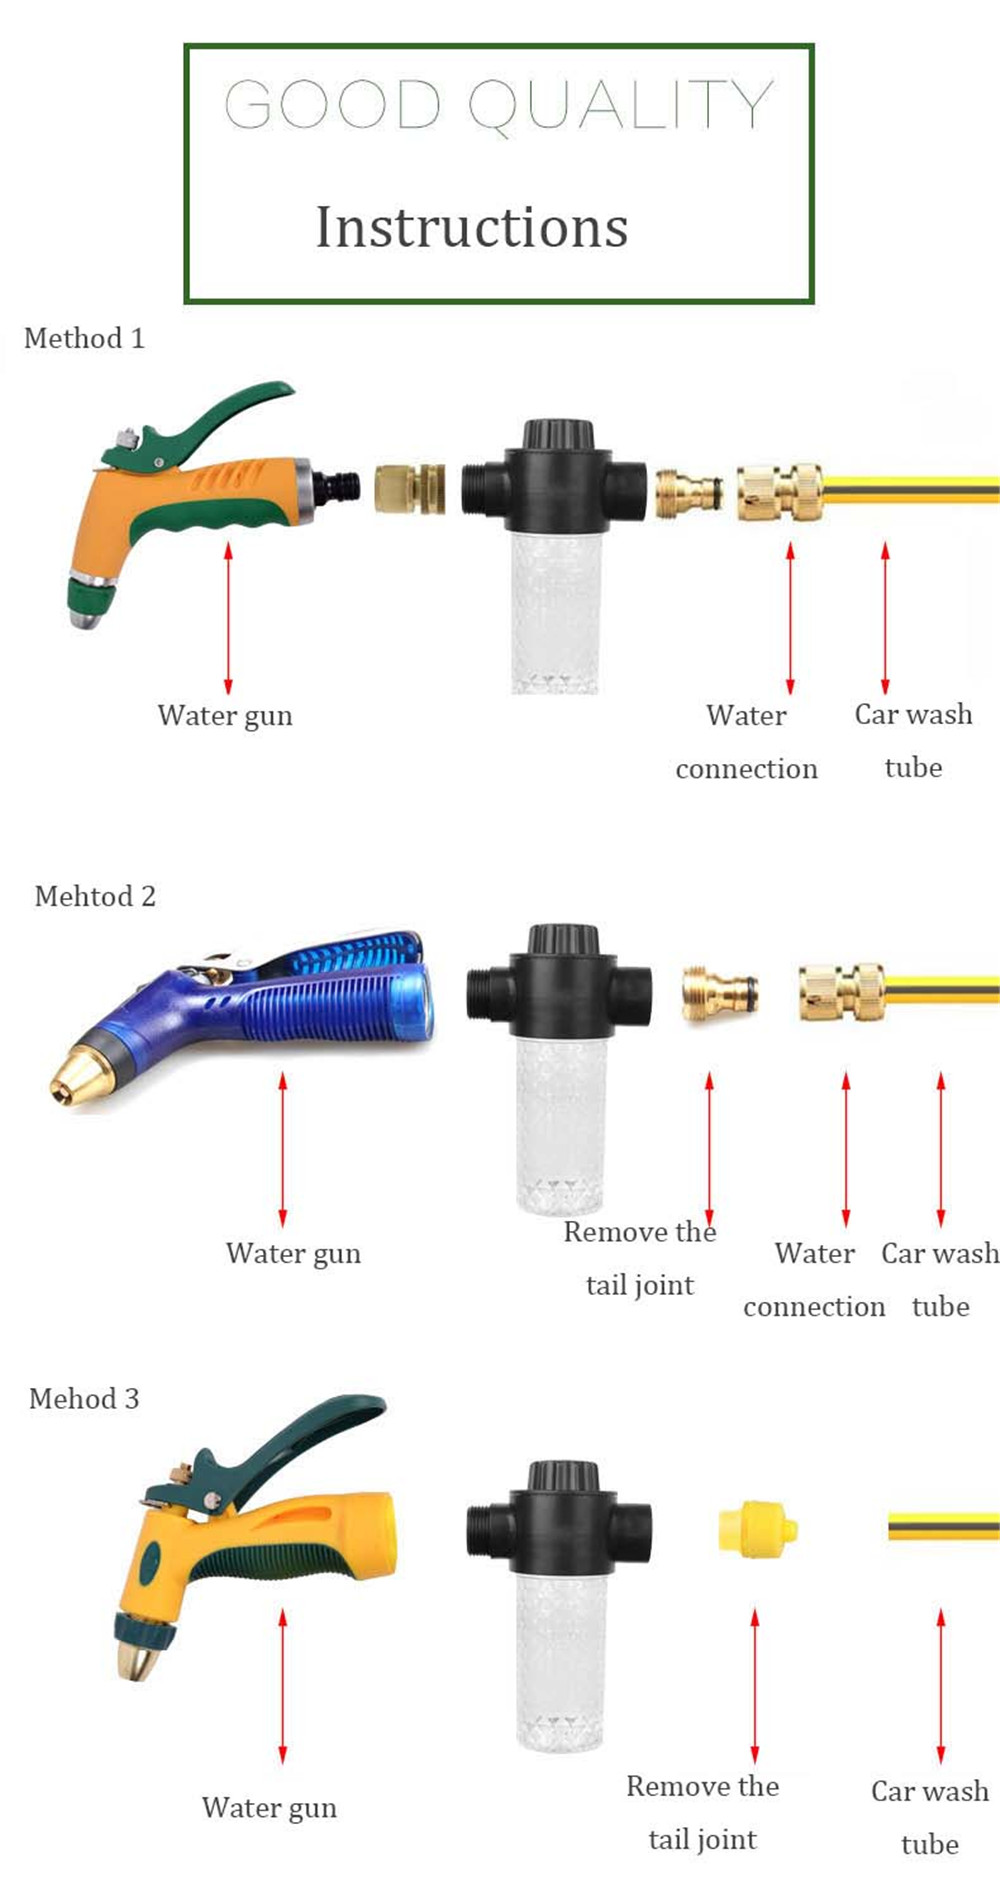 High-Pressure-Power-Water-Tool-Watering-Car-Washer-Water-Foamer-Pot-Sprayer-Watering-Sprinkler-Tool-1559264-3